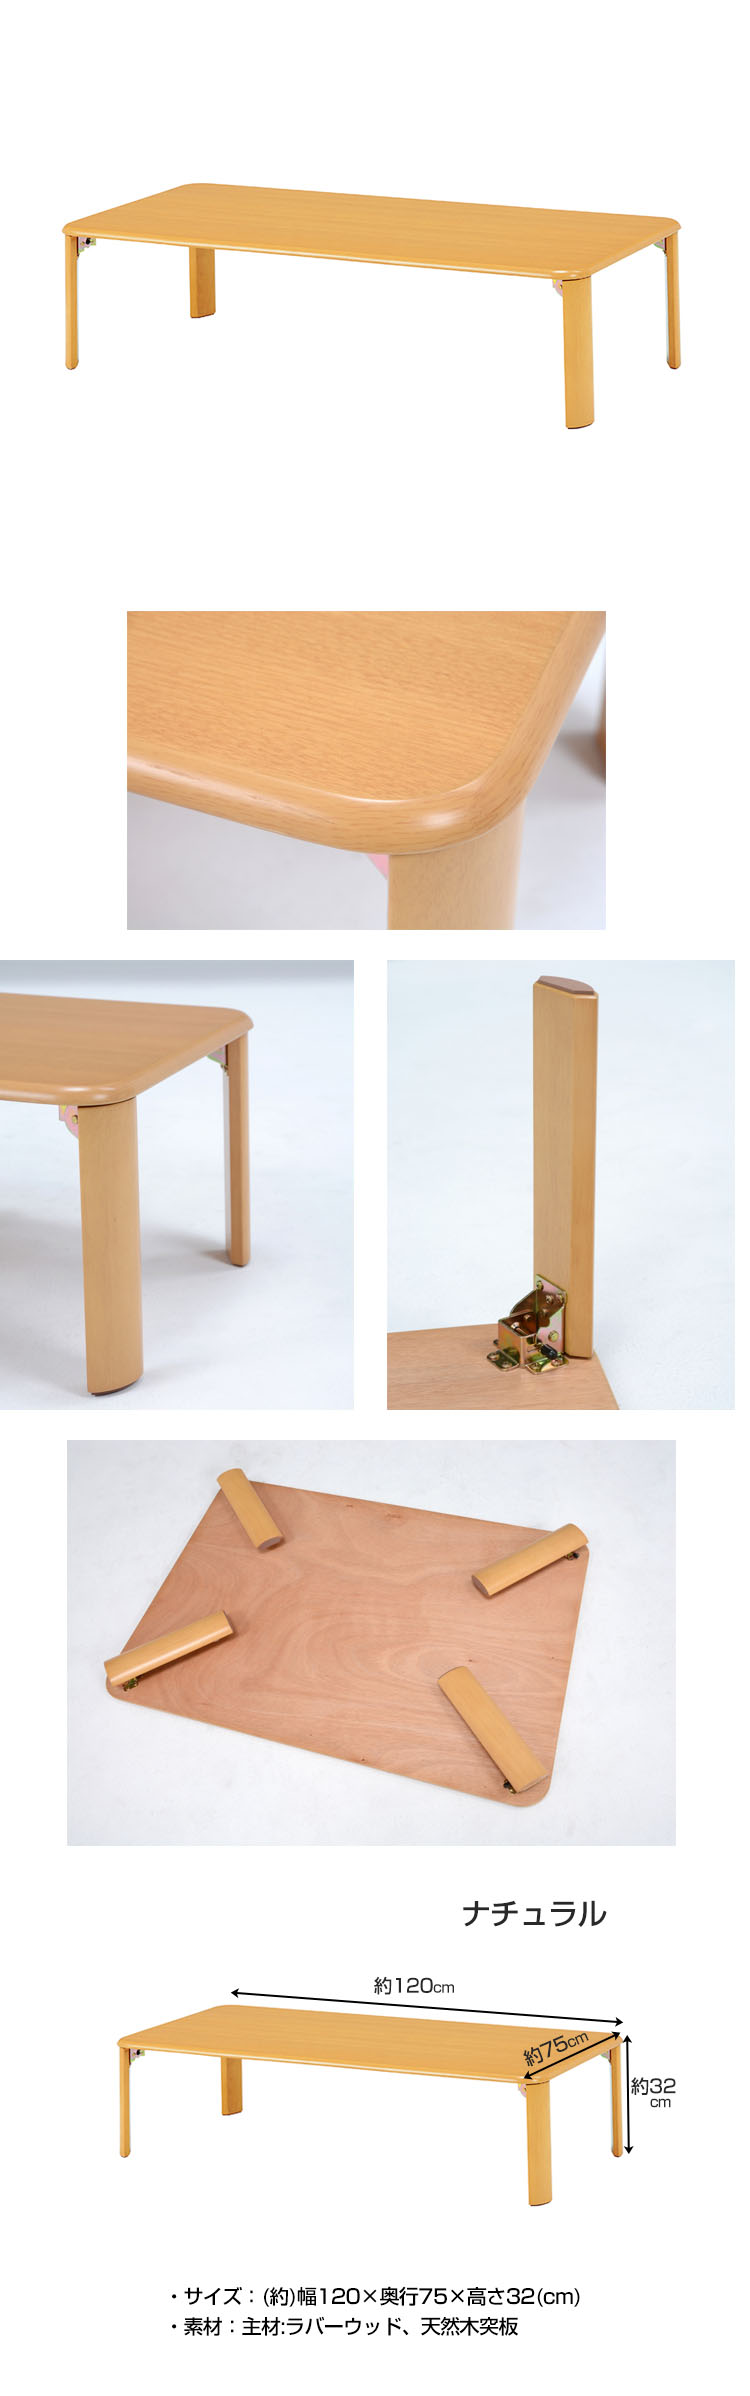 NEW人気折れ脚 リビングテーブル 120cm×75cm 脚 折りたたみ ローテーブル ちゃぶ台 木製 おしゃれ テーブル 座卓、ちゃぶ台